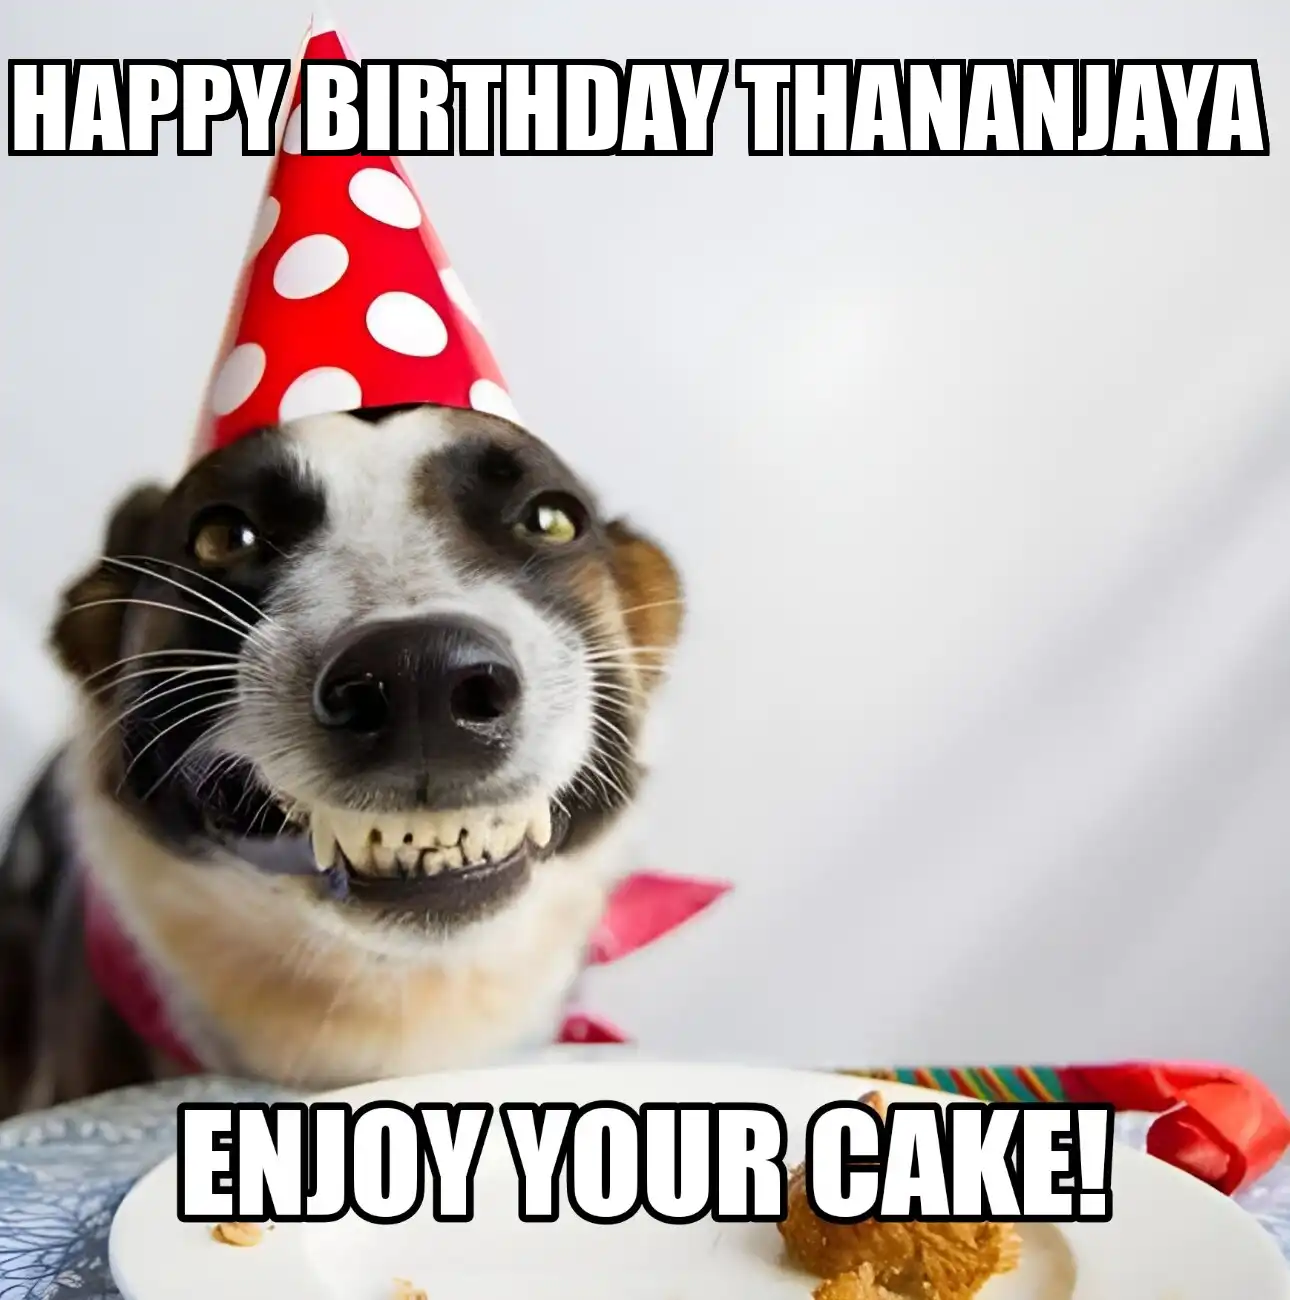 Happy Birthday Thananjaya Enjoy Your Cake Dog Meme